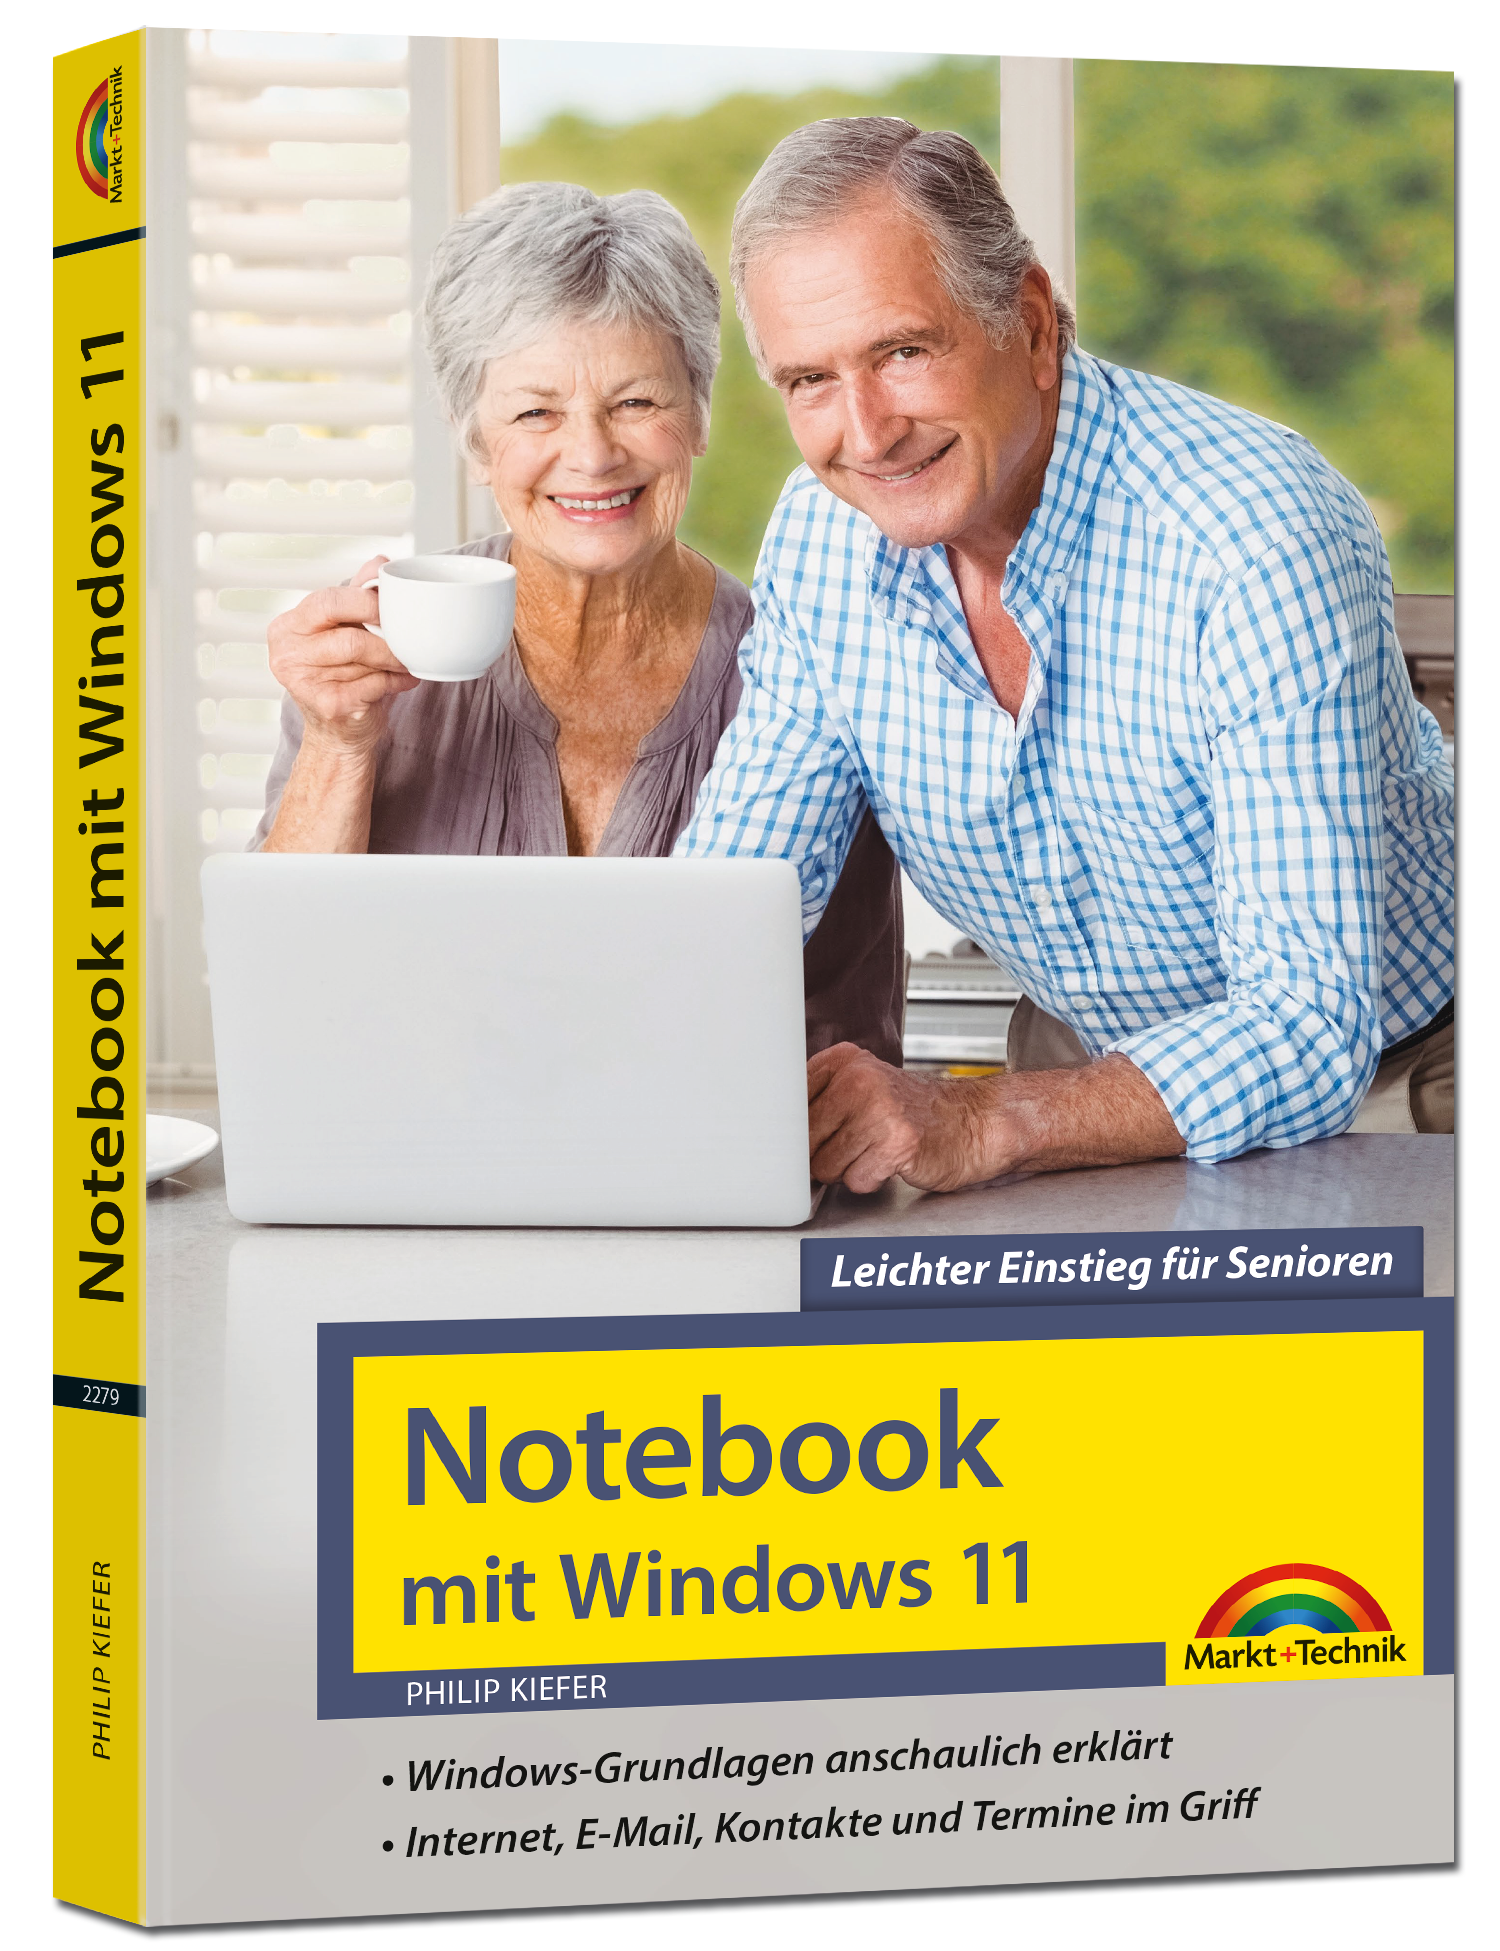  Notebook mit Windows 11 – Leichter Einstieg für Senioren 